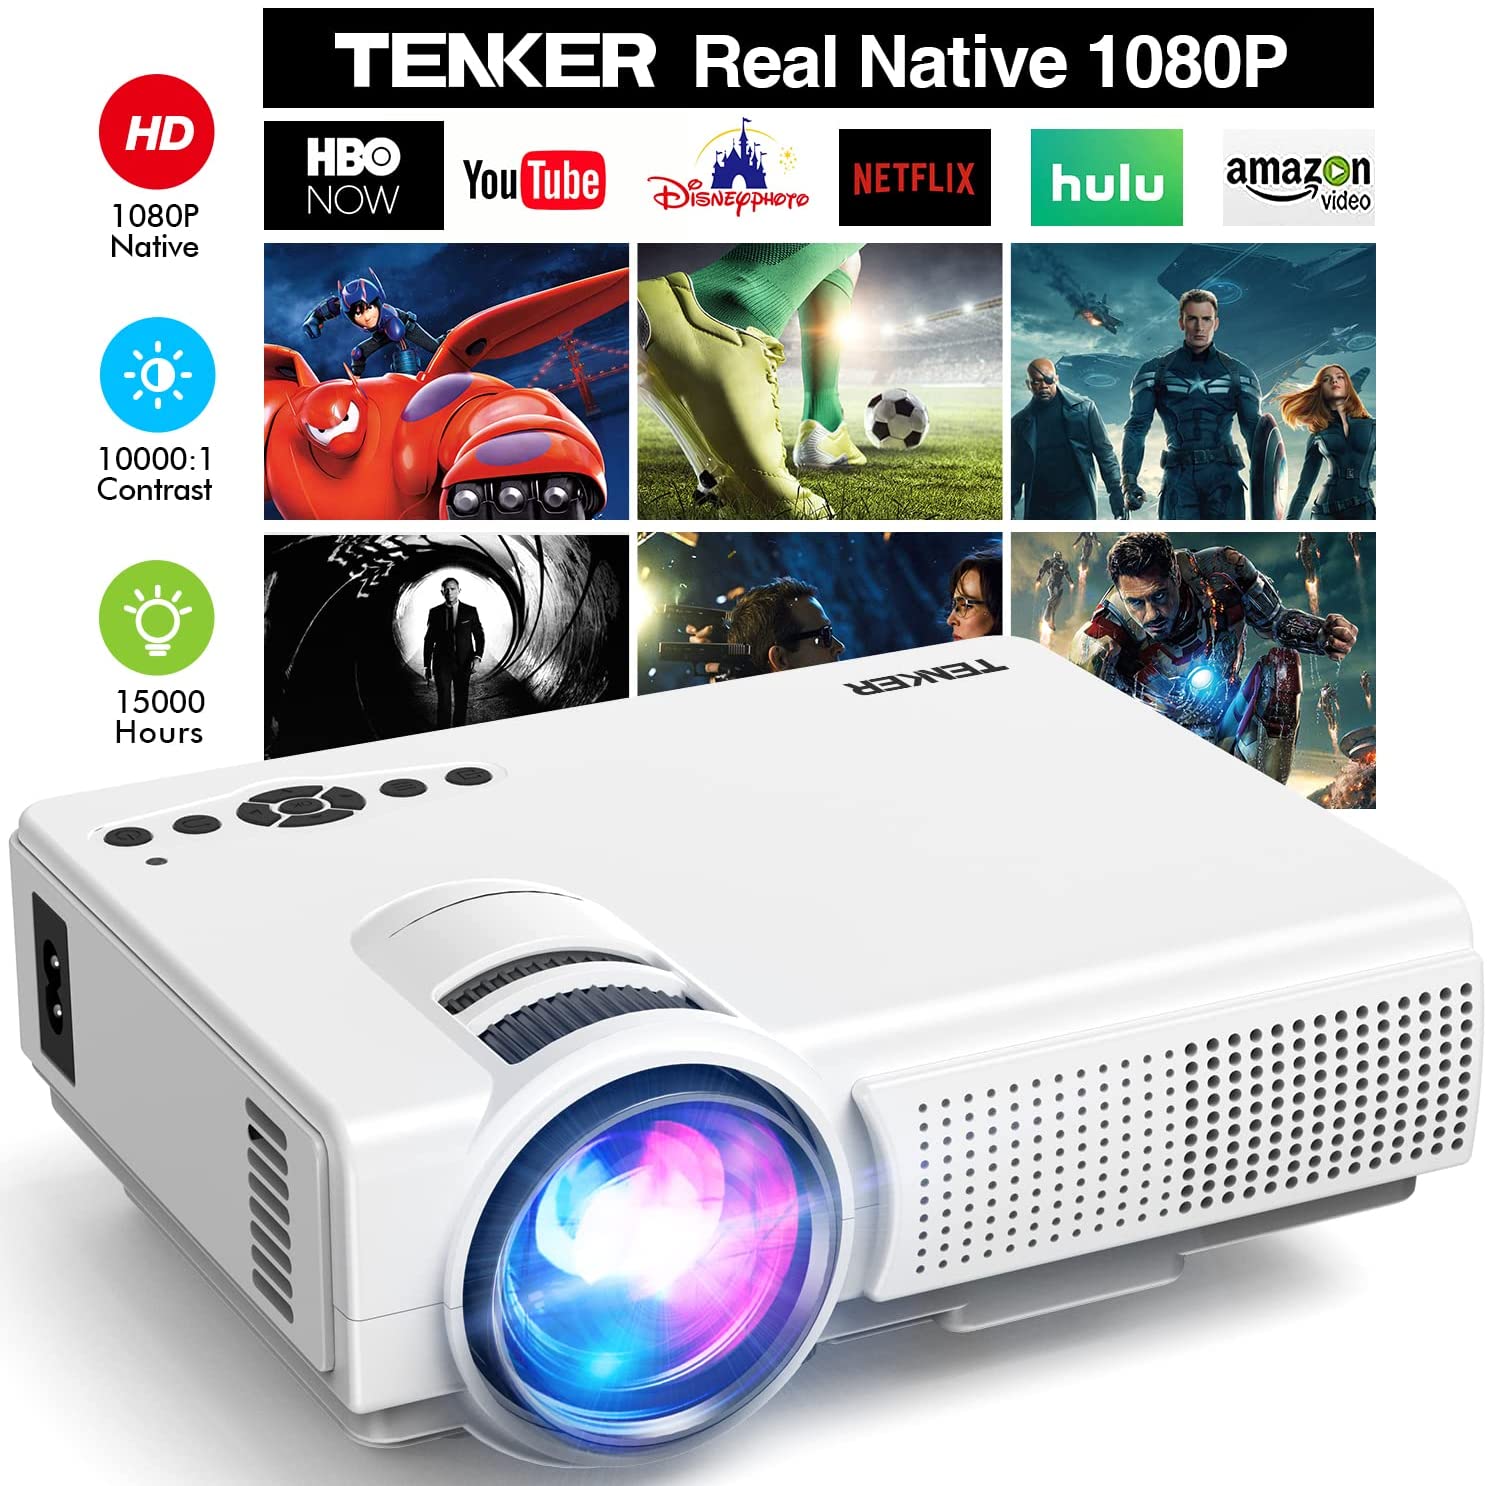 TENKER Native 1080P Projector: